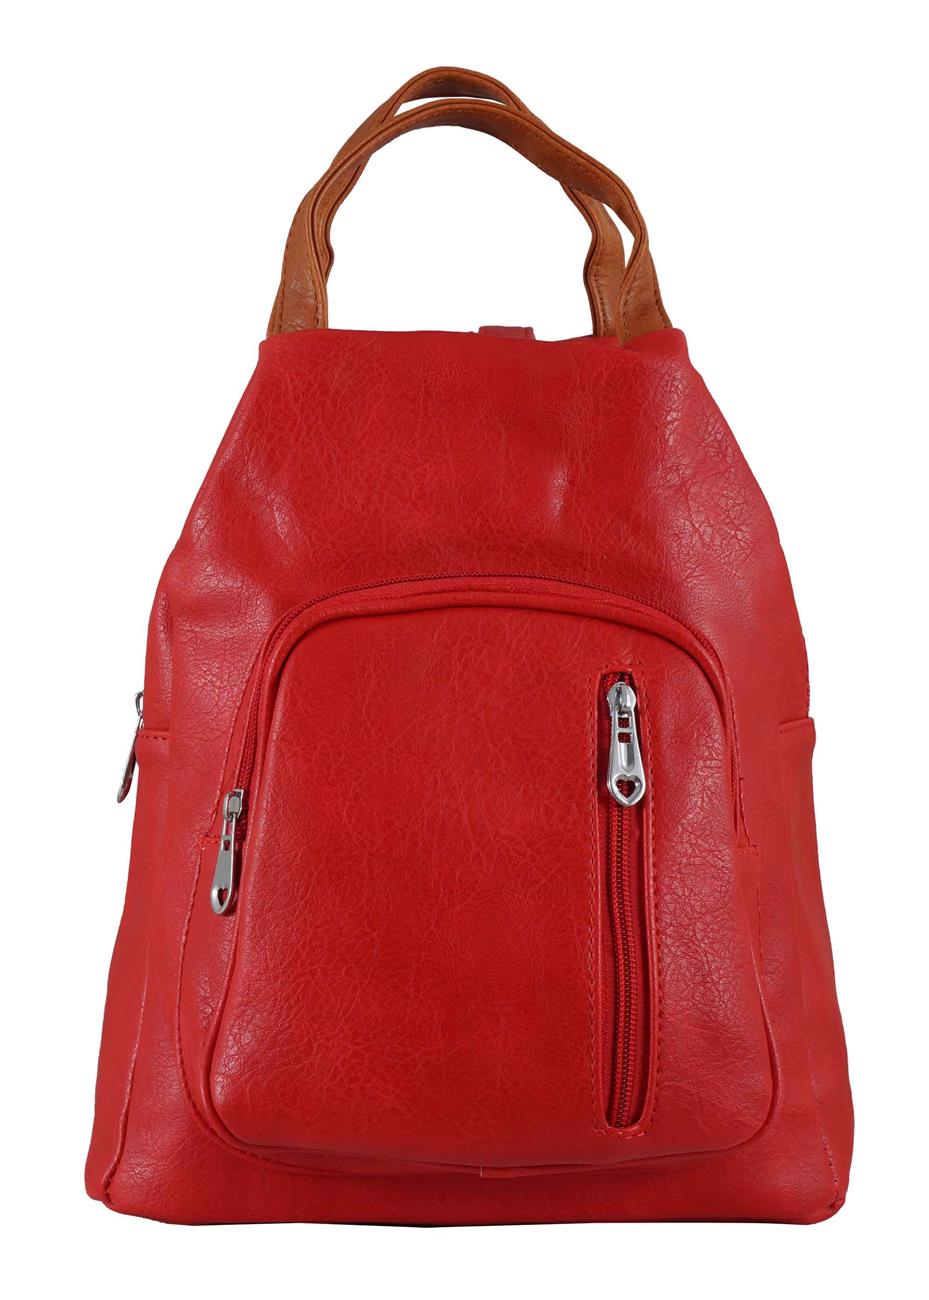 Γυναικεία τσάντα δερματίνη back bag.Casual style.